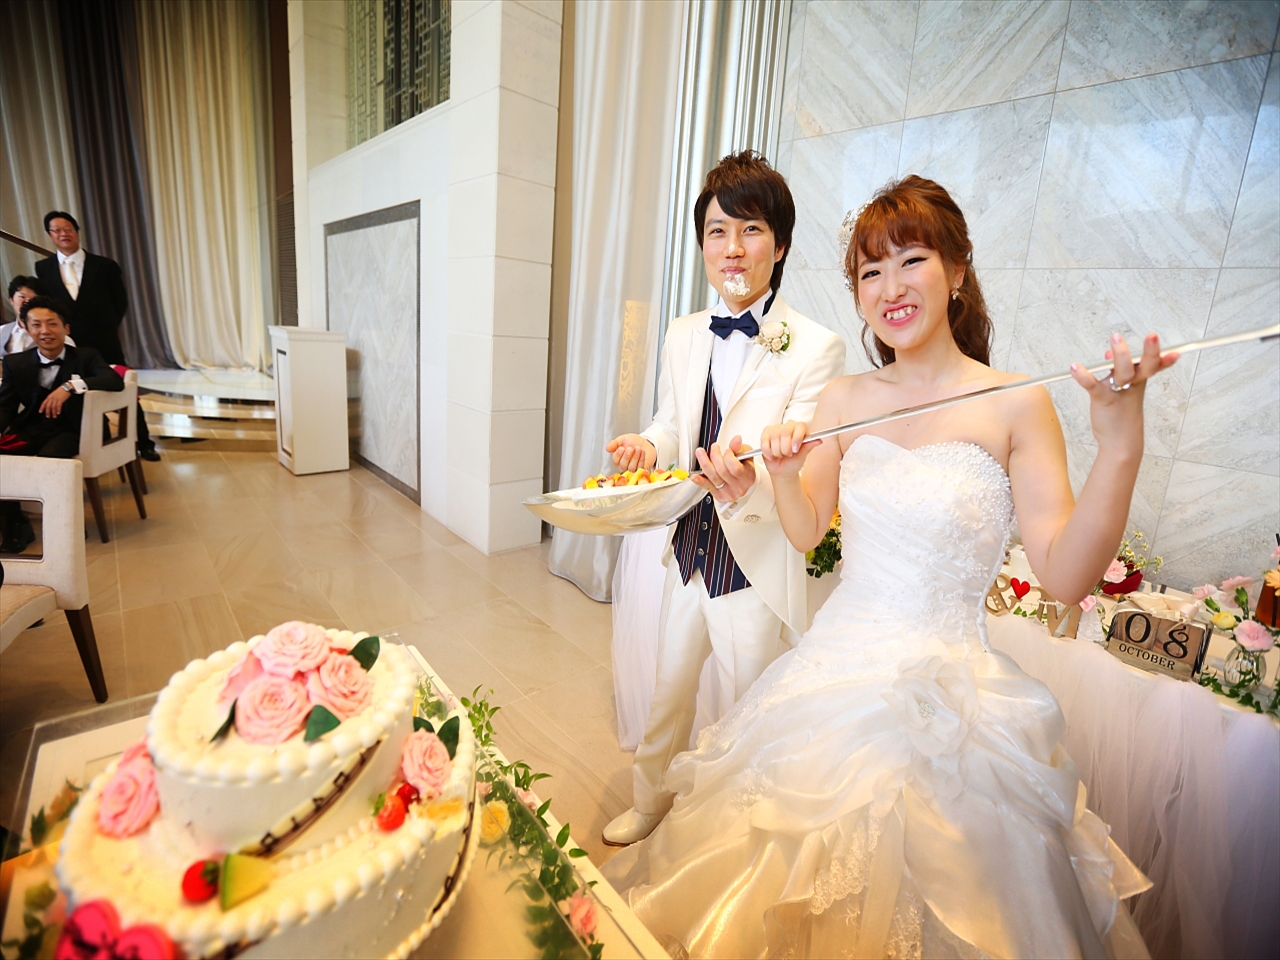 ビッグスプーン 結婚式 120cmケーキ入刀 - カトラリー(スプーン等)